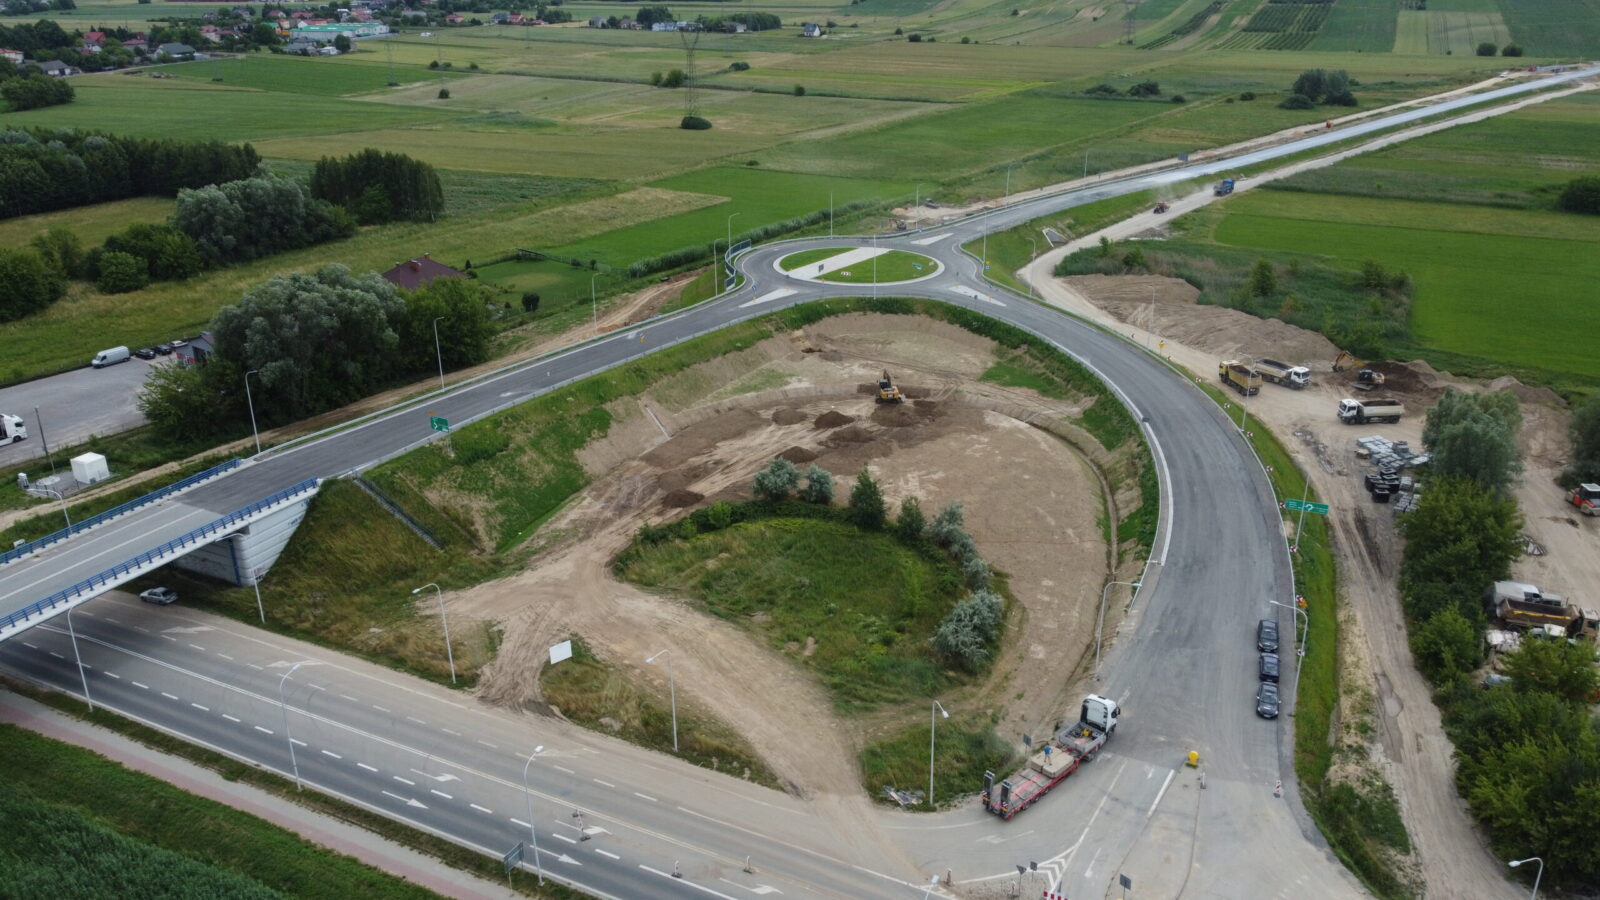 Od jutra (wtorek, 26 lipca) ponownie możliwy będzie wjazd na wiadukt nad drogą wojewódzką nr 755 w Ostrowcu Świętokrzyskim. Zakończyły się bowiem prace przy przebudowanej łącznicy istniejącego węzła Brezelia. Nadal zamknięty będzie zjazd z ronda na pozostającą w budowie obwodnicę miasta w ciągu drogi krajowej nr 9. 
